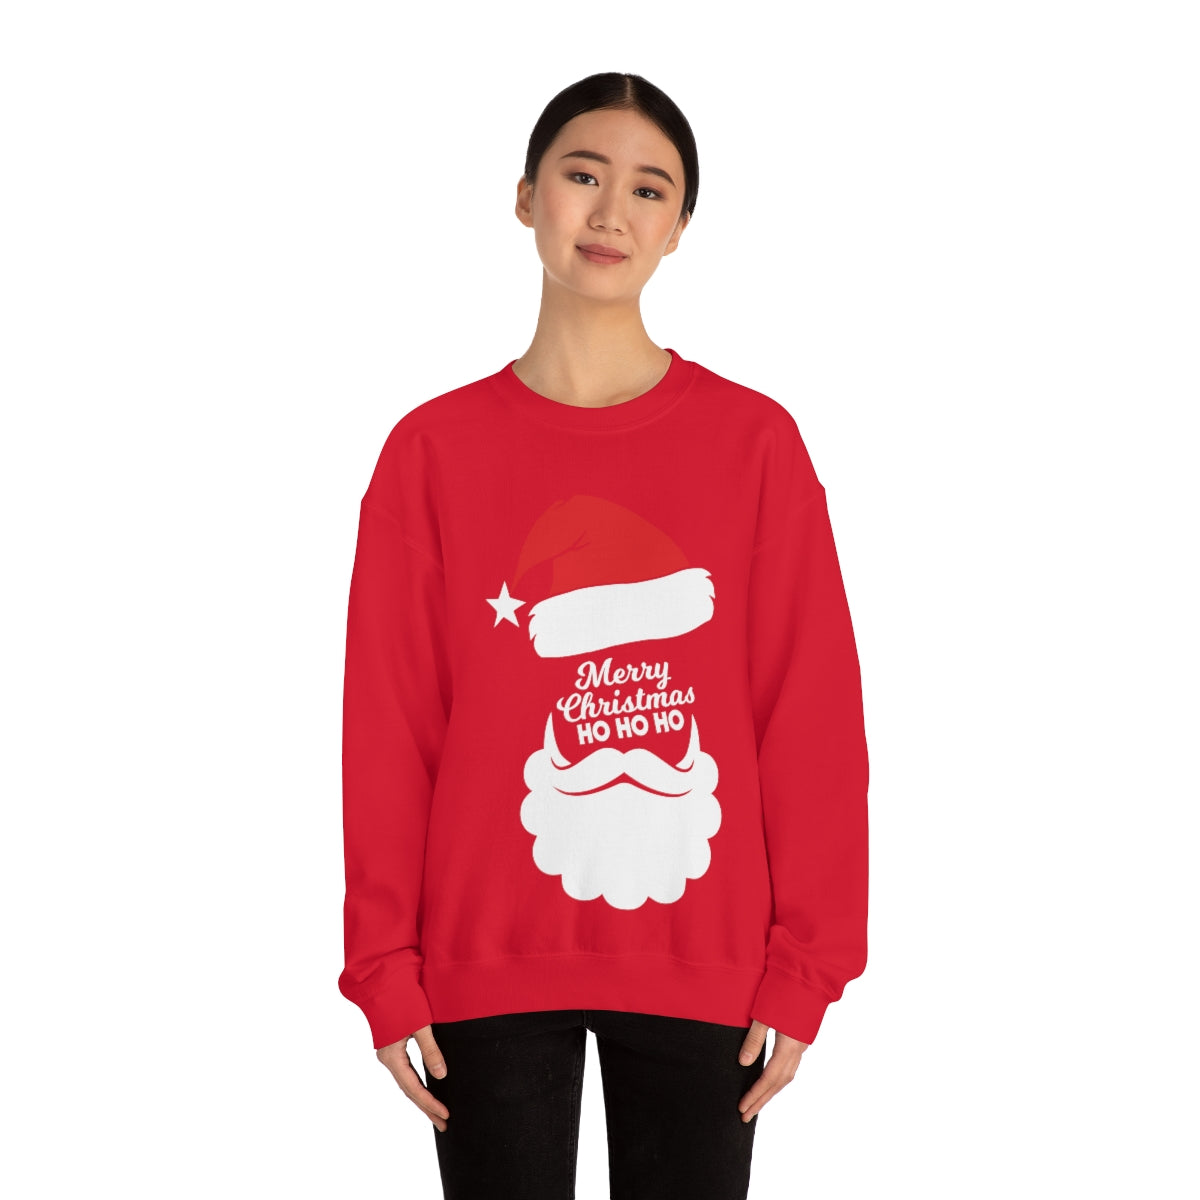 Merry Christmas Unisex Sweatshirts , Sweatshirt , Women Sweatshirt , Men Sweatshirt ,Crewneck Sweatshirt, Merry Christmas Ho Ho Printify